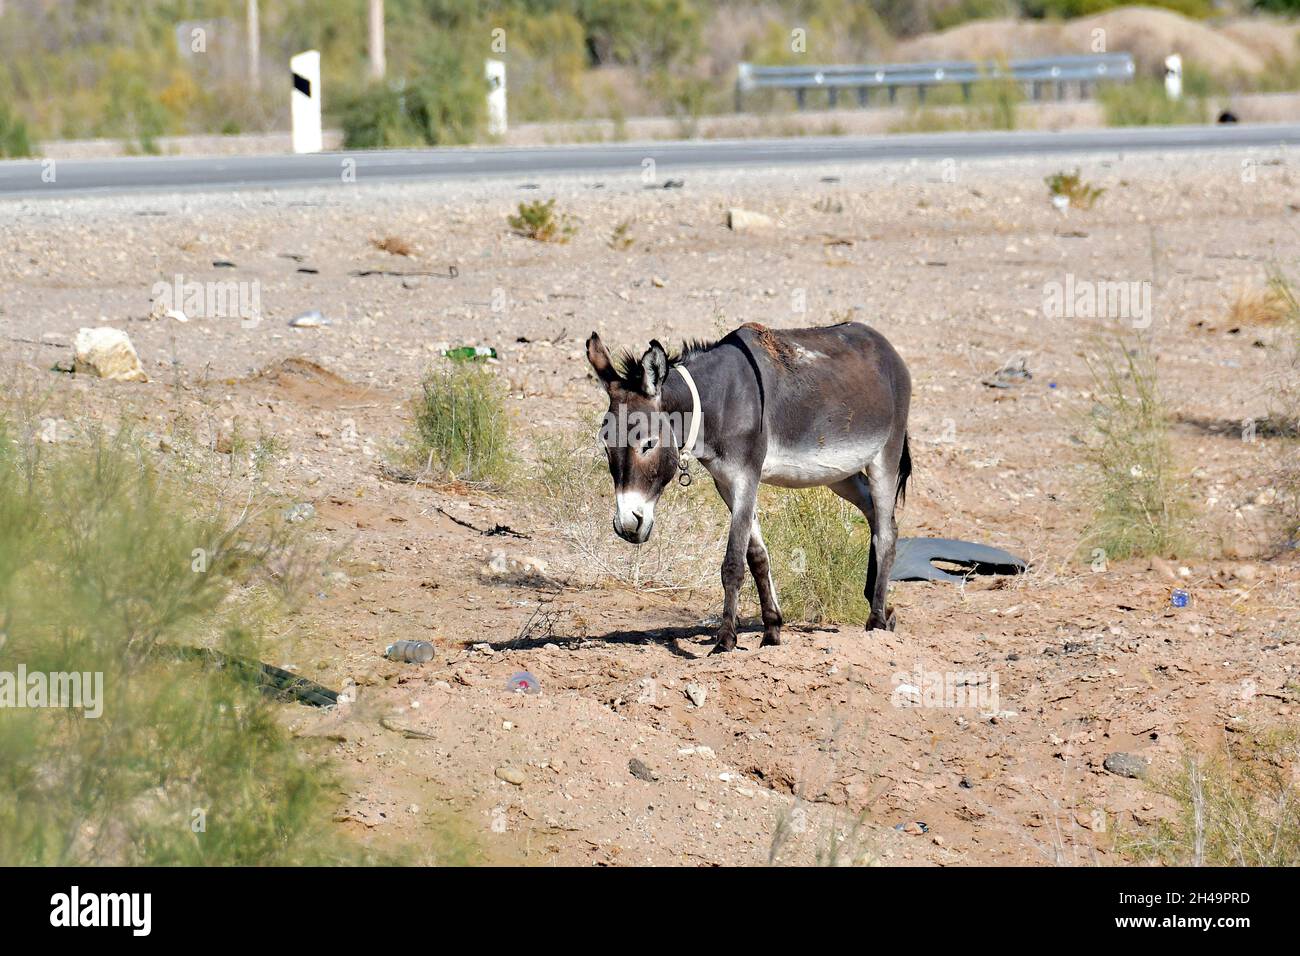 donkey, Hausesel, Equus africanus asinus, háziszamár, Kyzylkum Desert, Uzbekistan, Central Asia Stock Photo